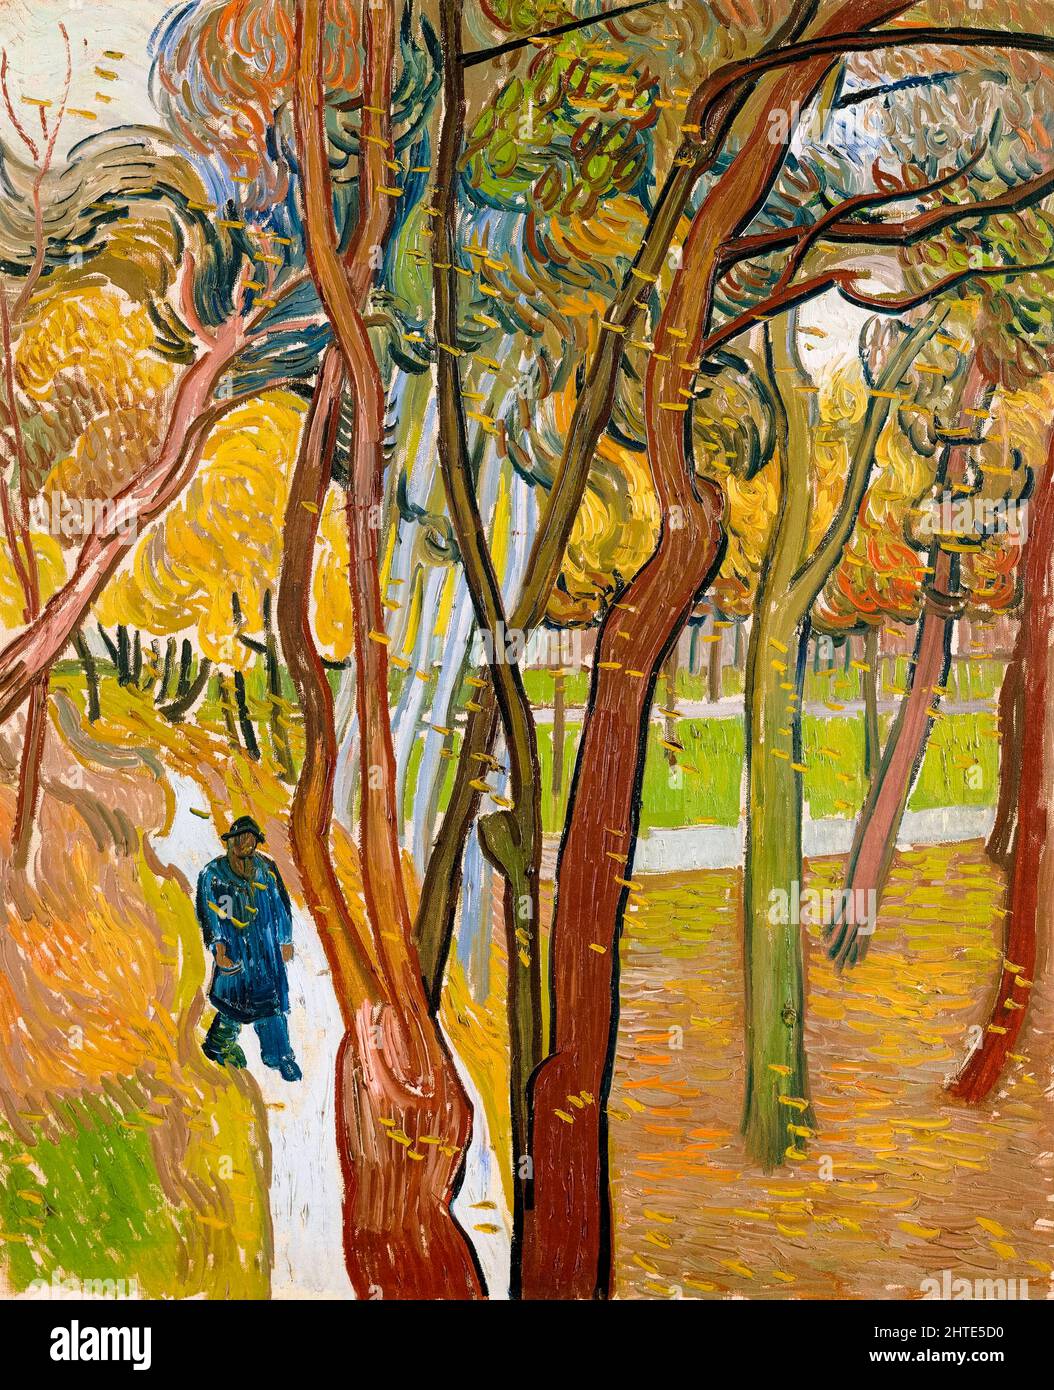 Vincent van Gogh, le jardin de l'hôpital Saint Paul (Leaf Fall), peinture, huile sur toile, 1889 Banque D'Images